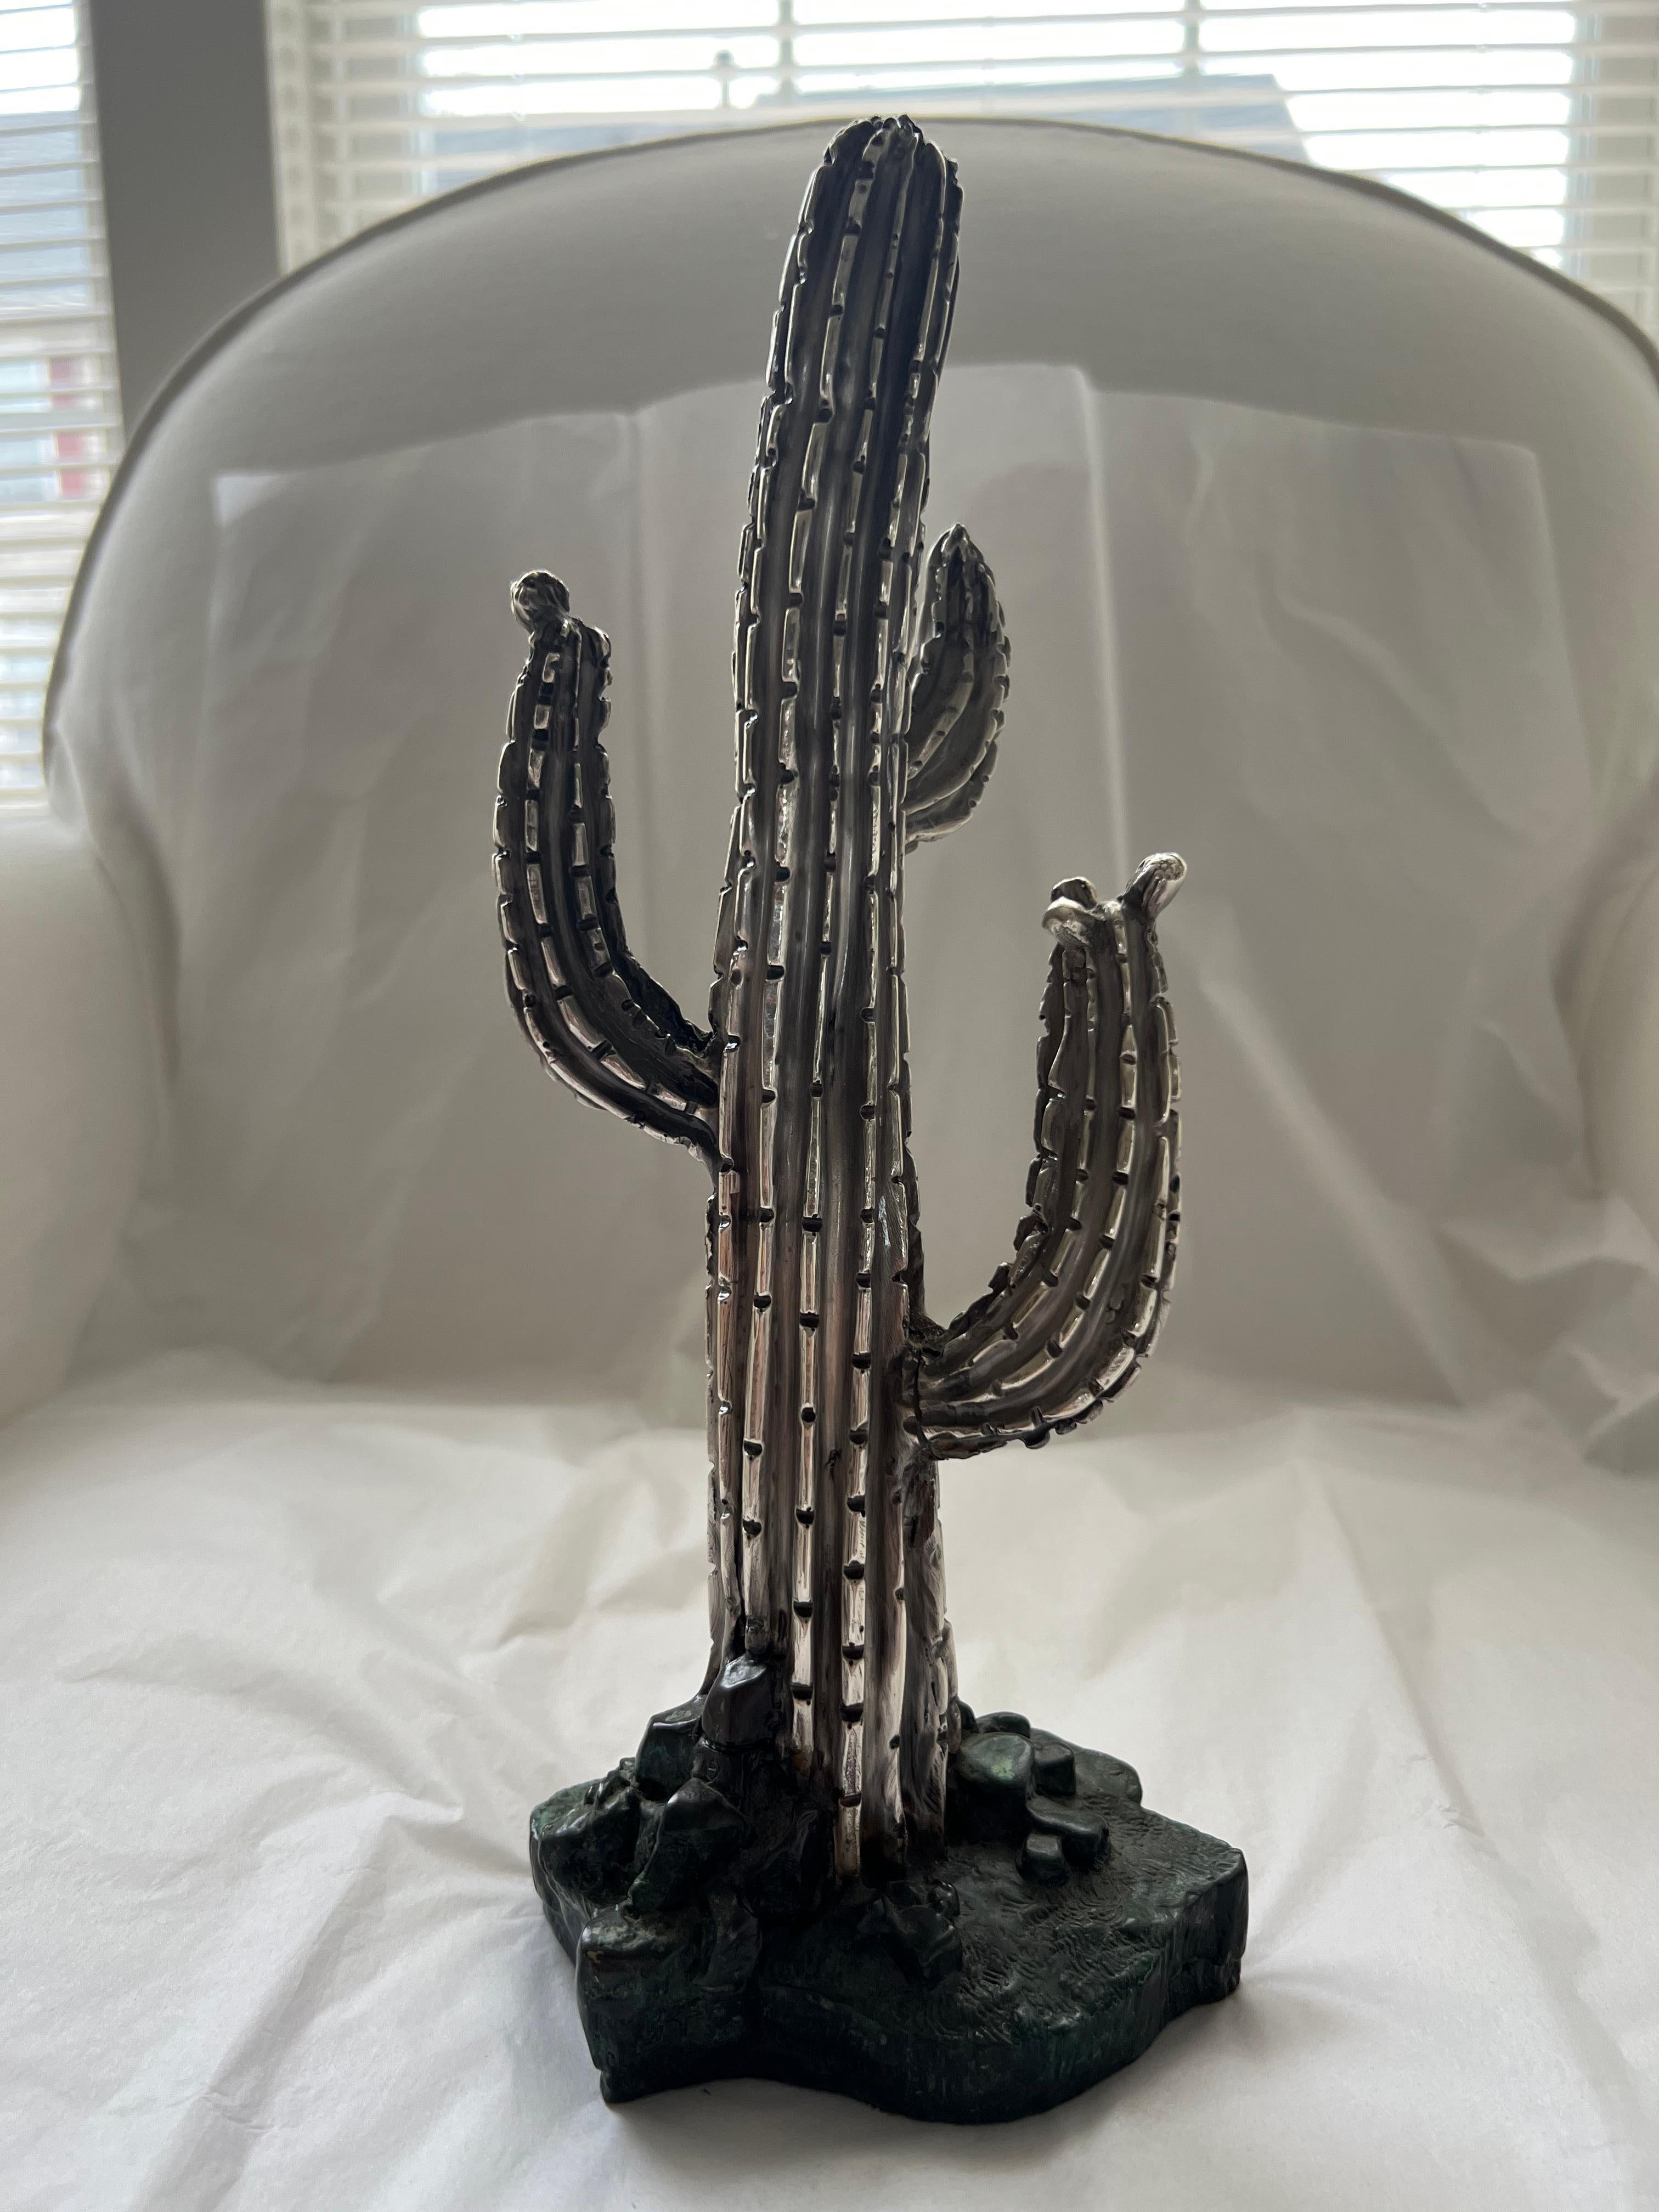 Cactus Statute (1 pounds + 6.2 oz)
